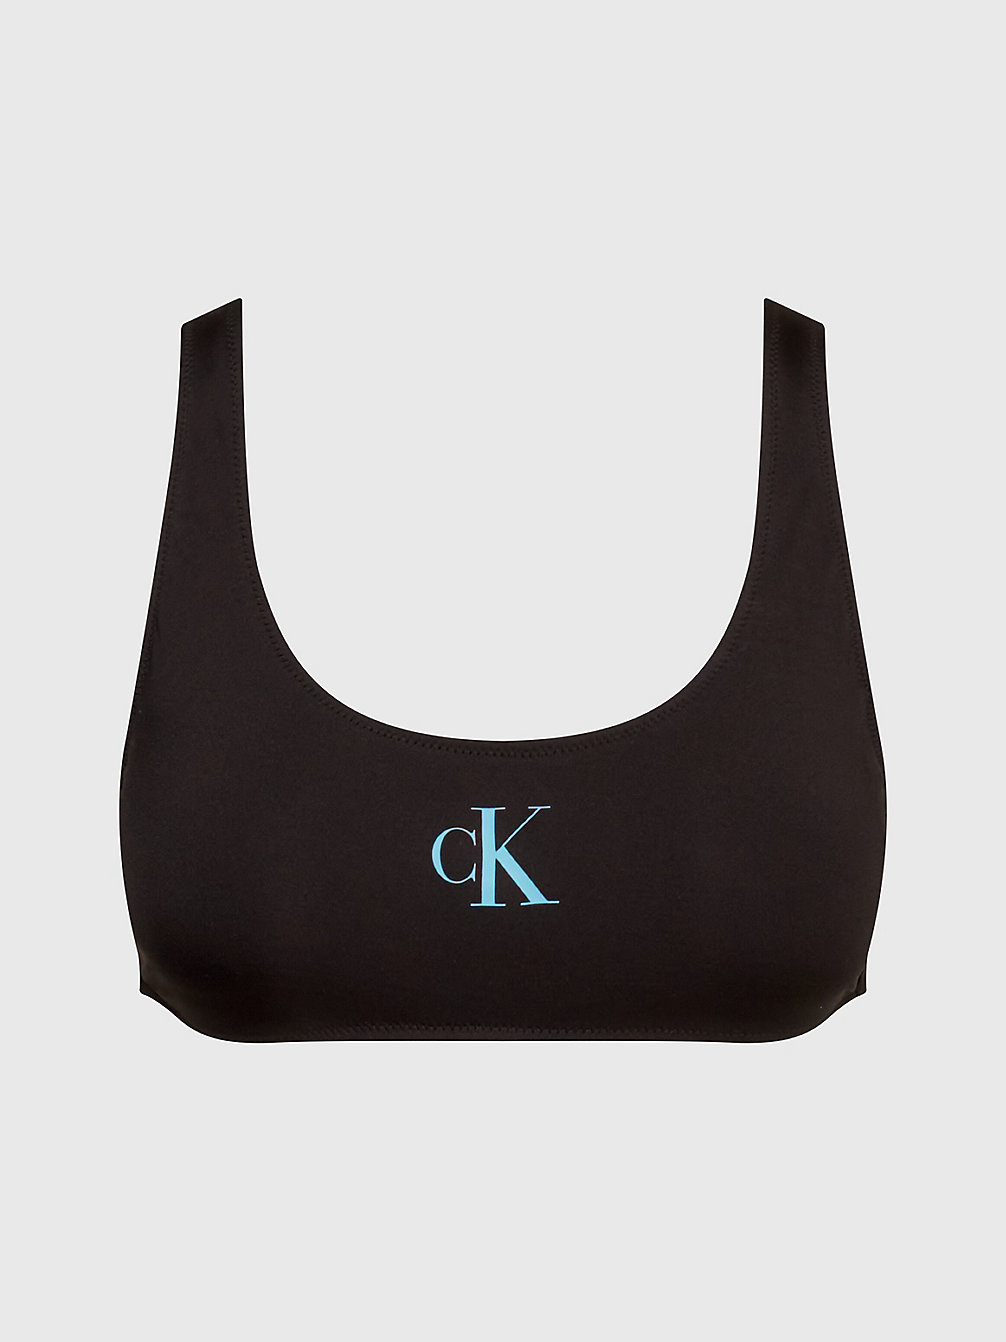 PVH BLACK Bralette Bikini Top - CK Monogram undefined women Calvin Klein